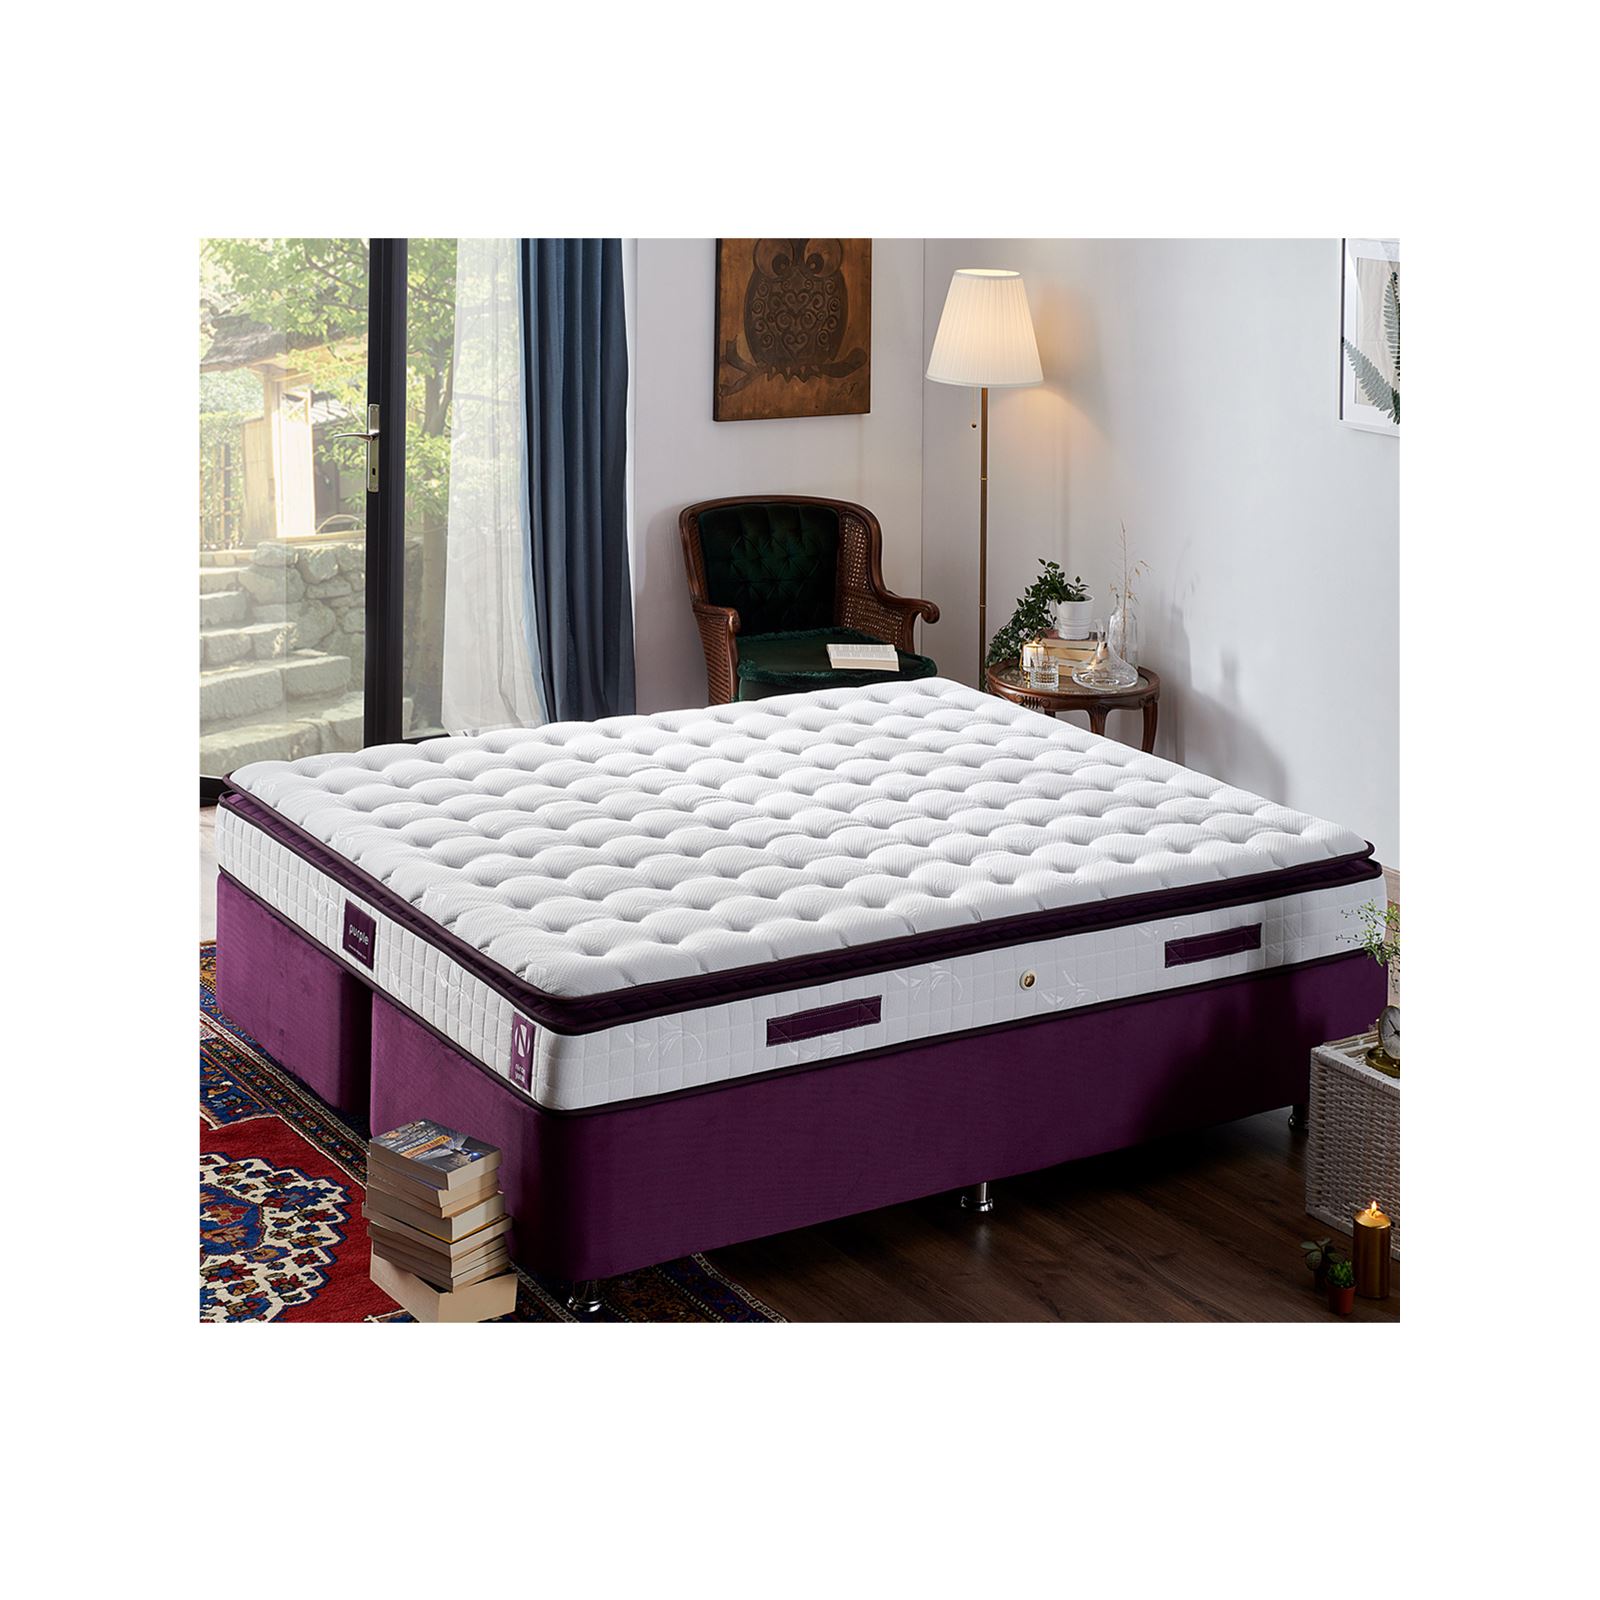 Niron Purple Yatak Seti 160x200 cm Çift Kişilik Yatak Baza Başlık Takımı Orta Sert Yatak Baza ve Başlığı Mor